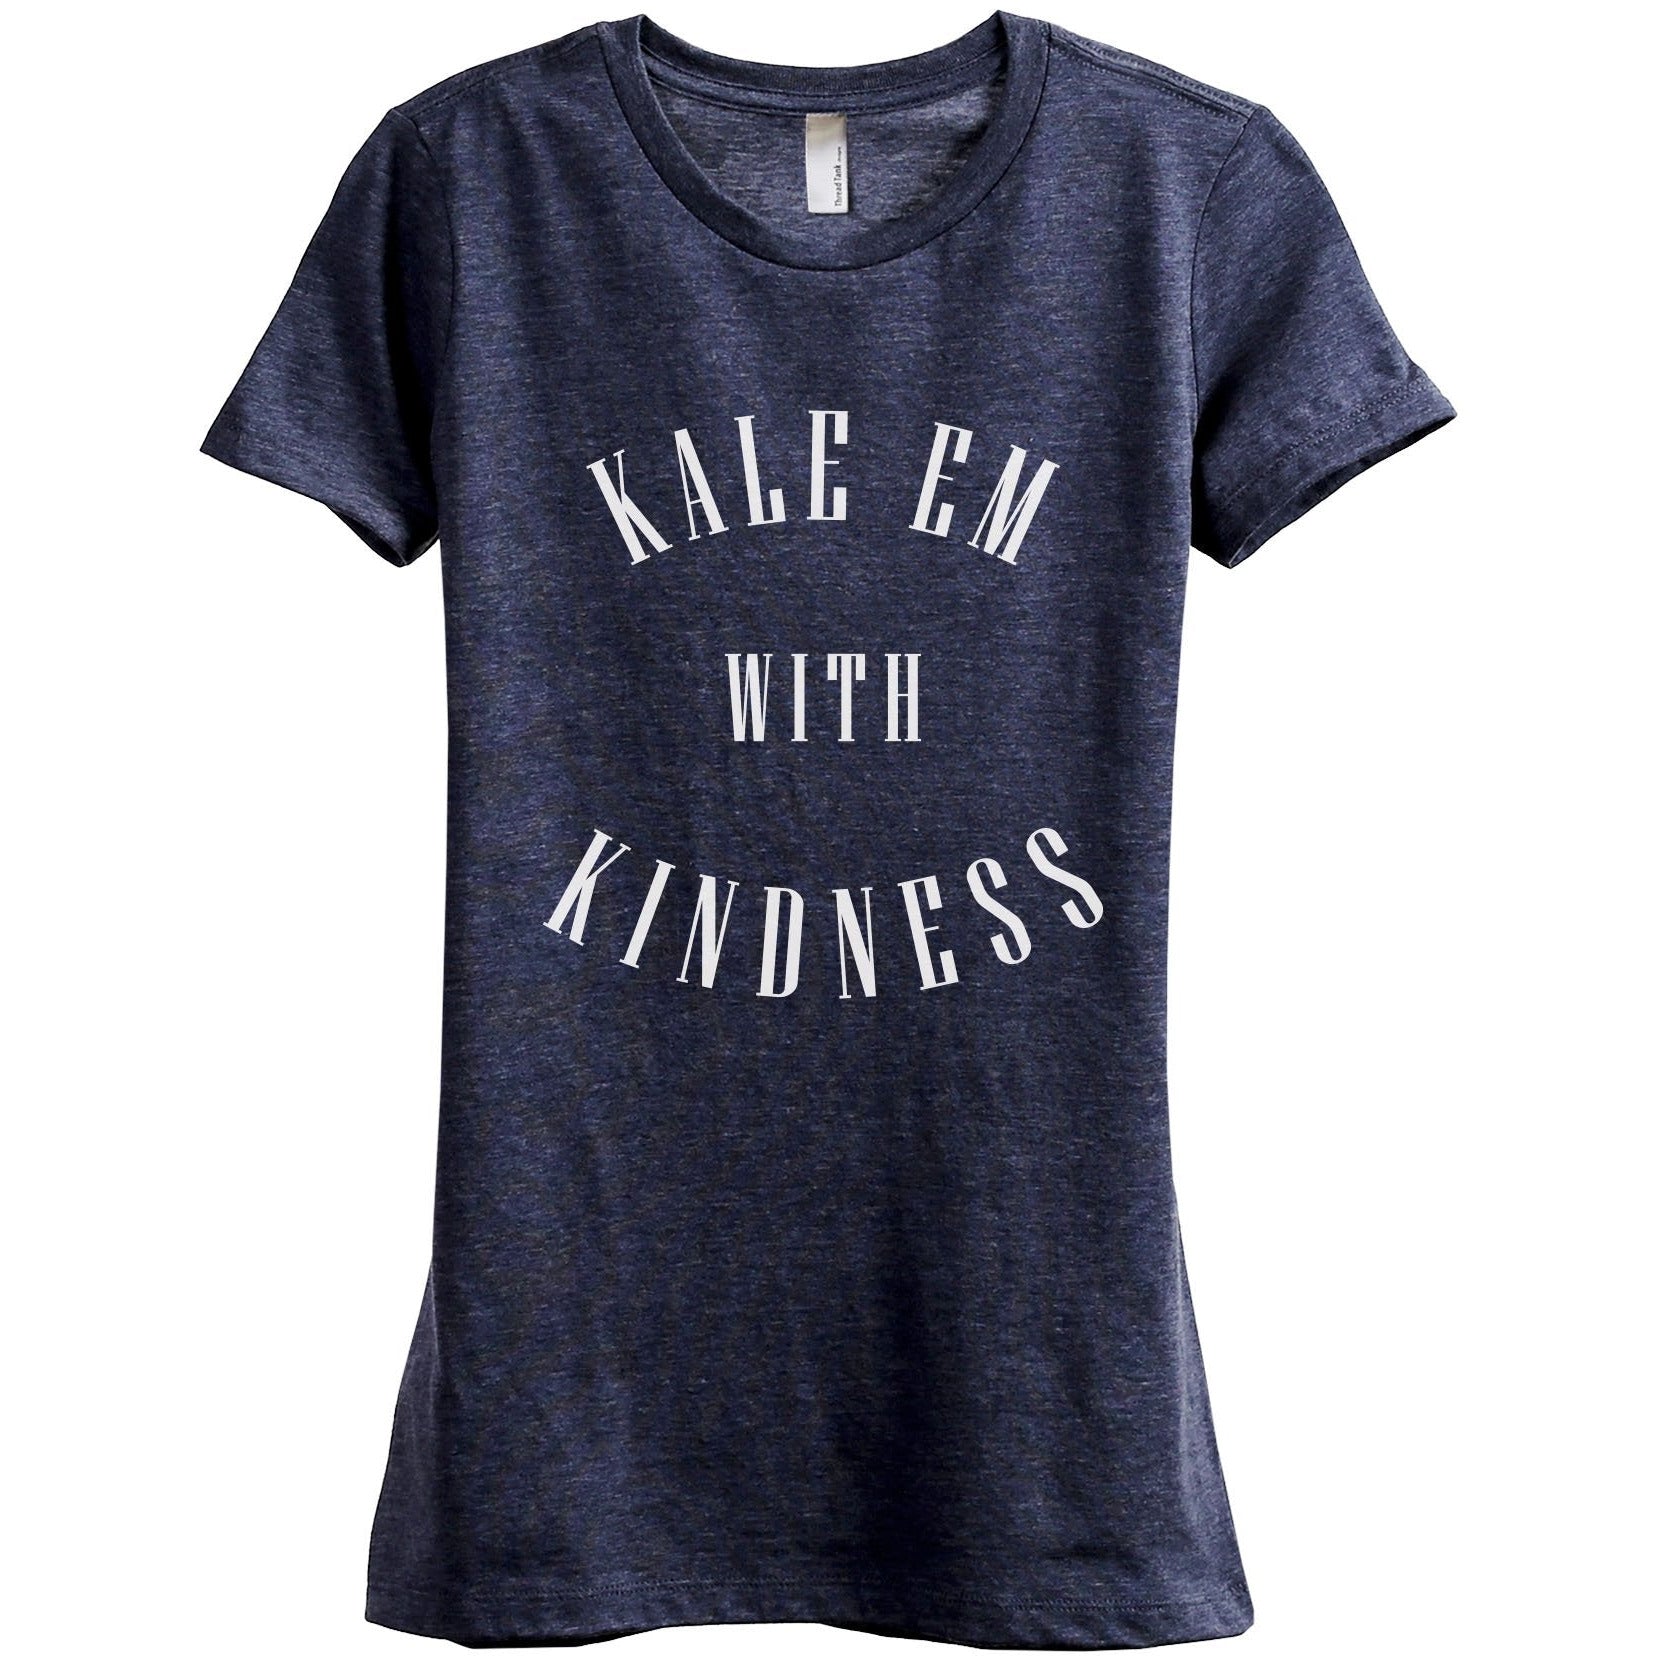 Kale Em With Kindness